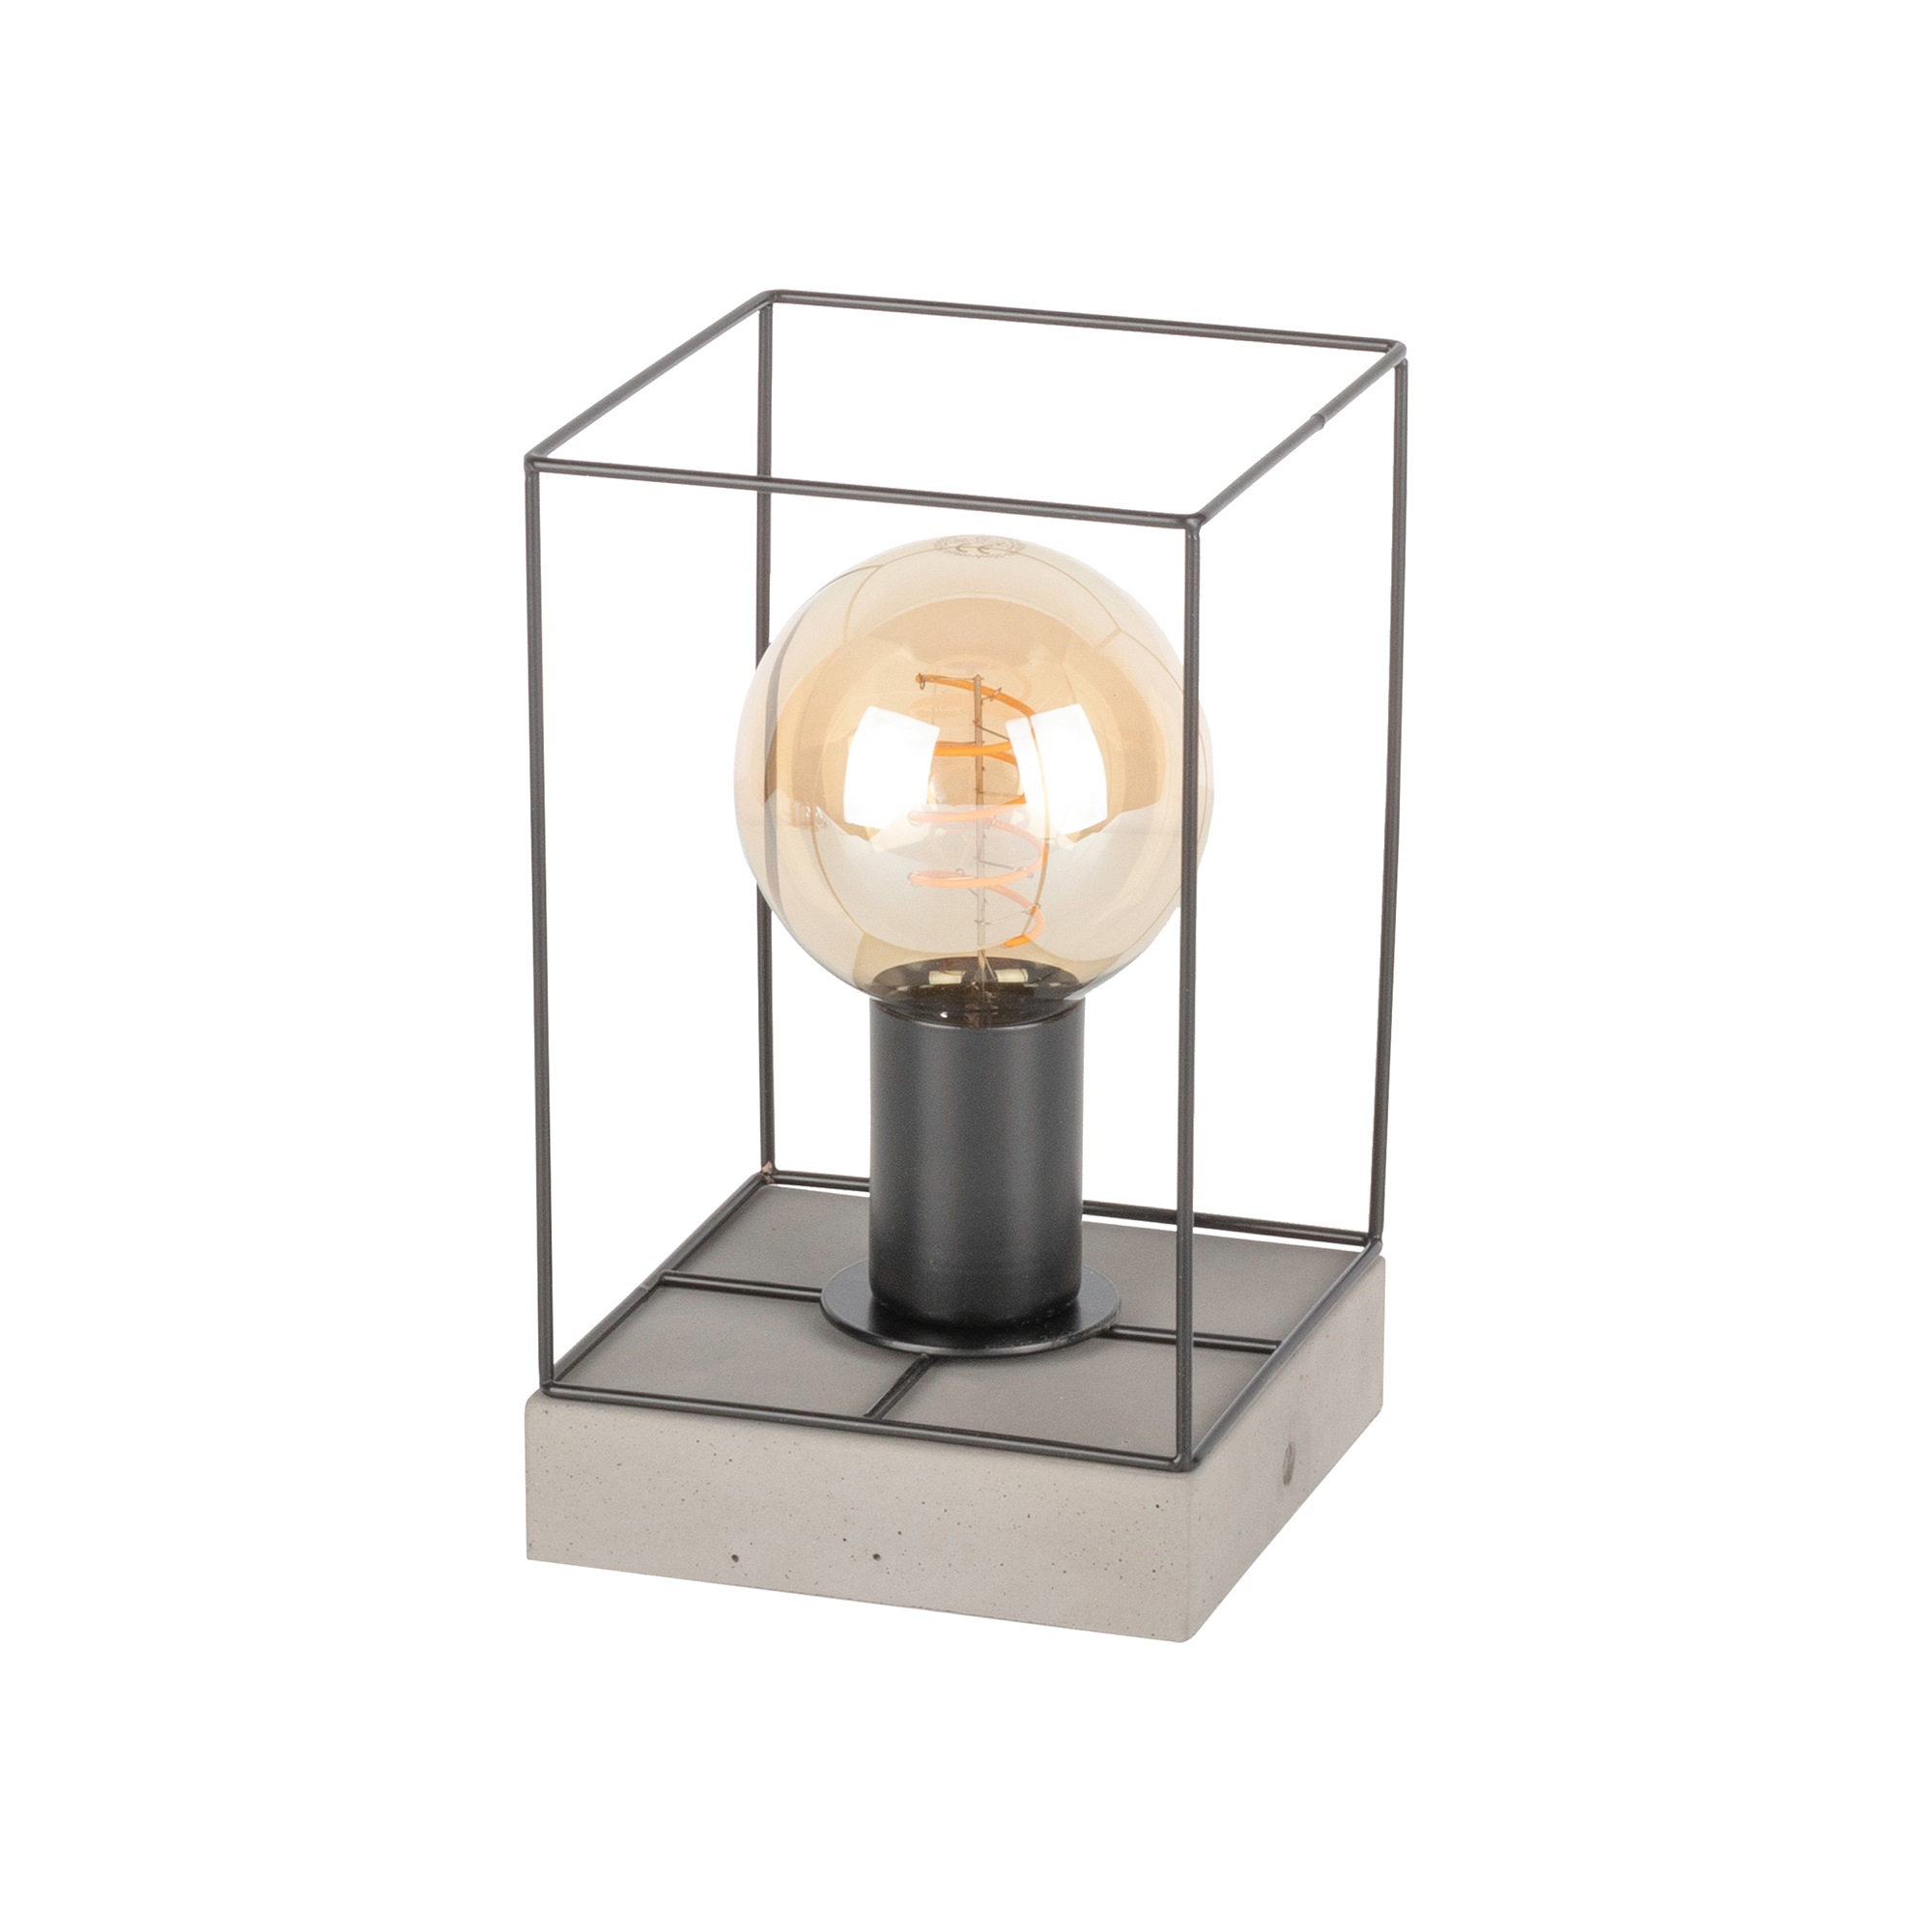 Metall und Glass LM Design´s Tischlampe 15 x27cm E27 